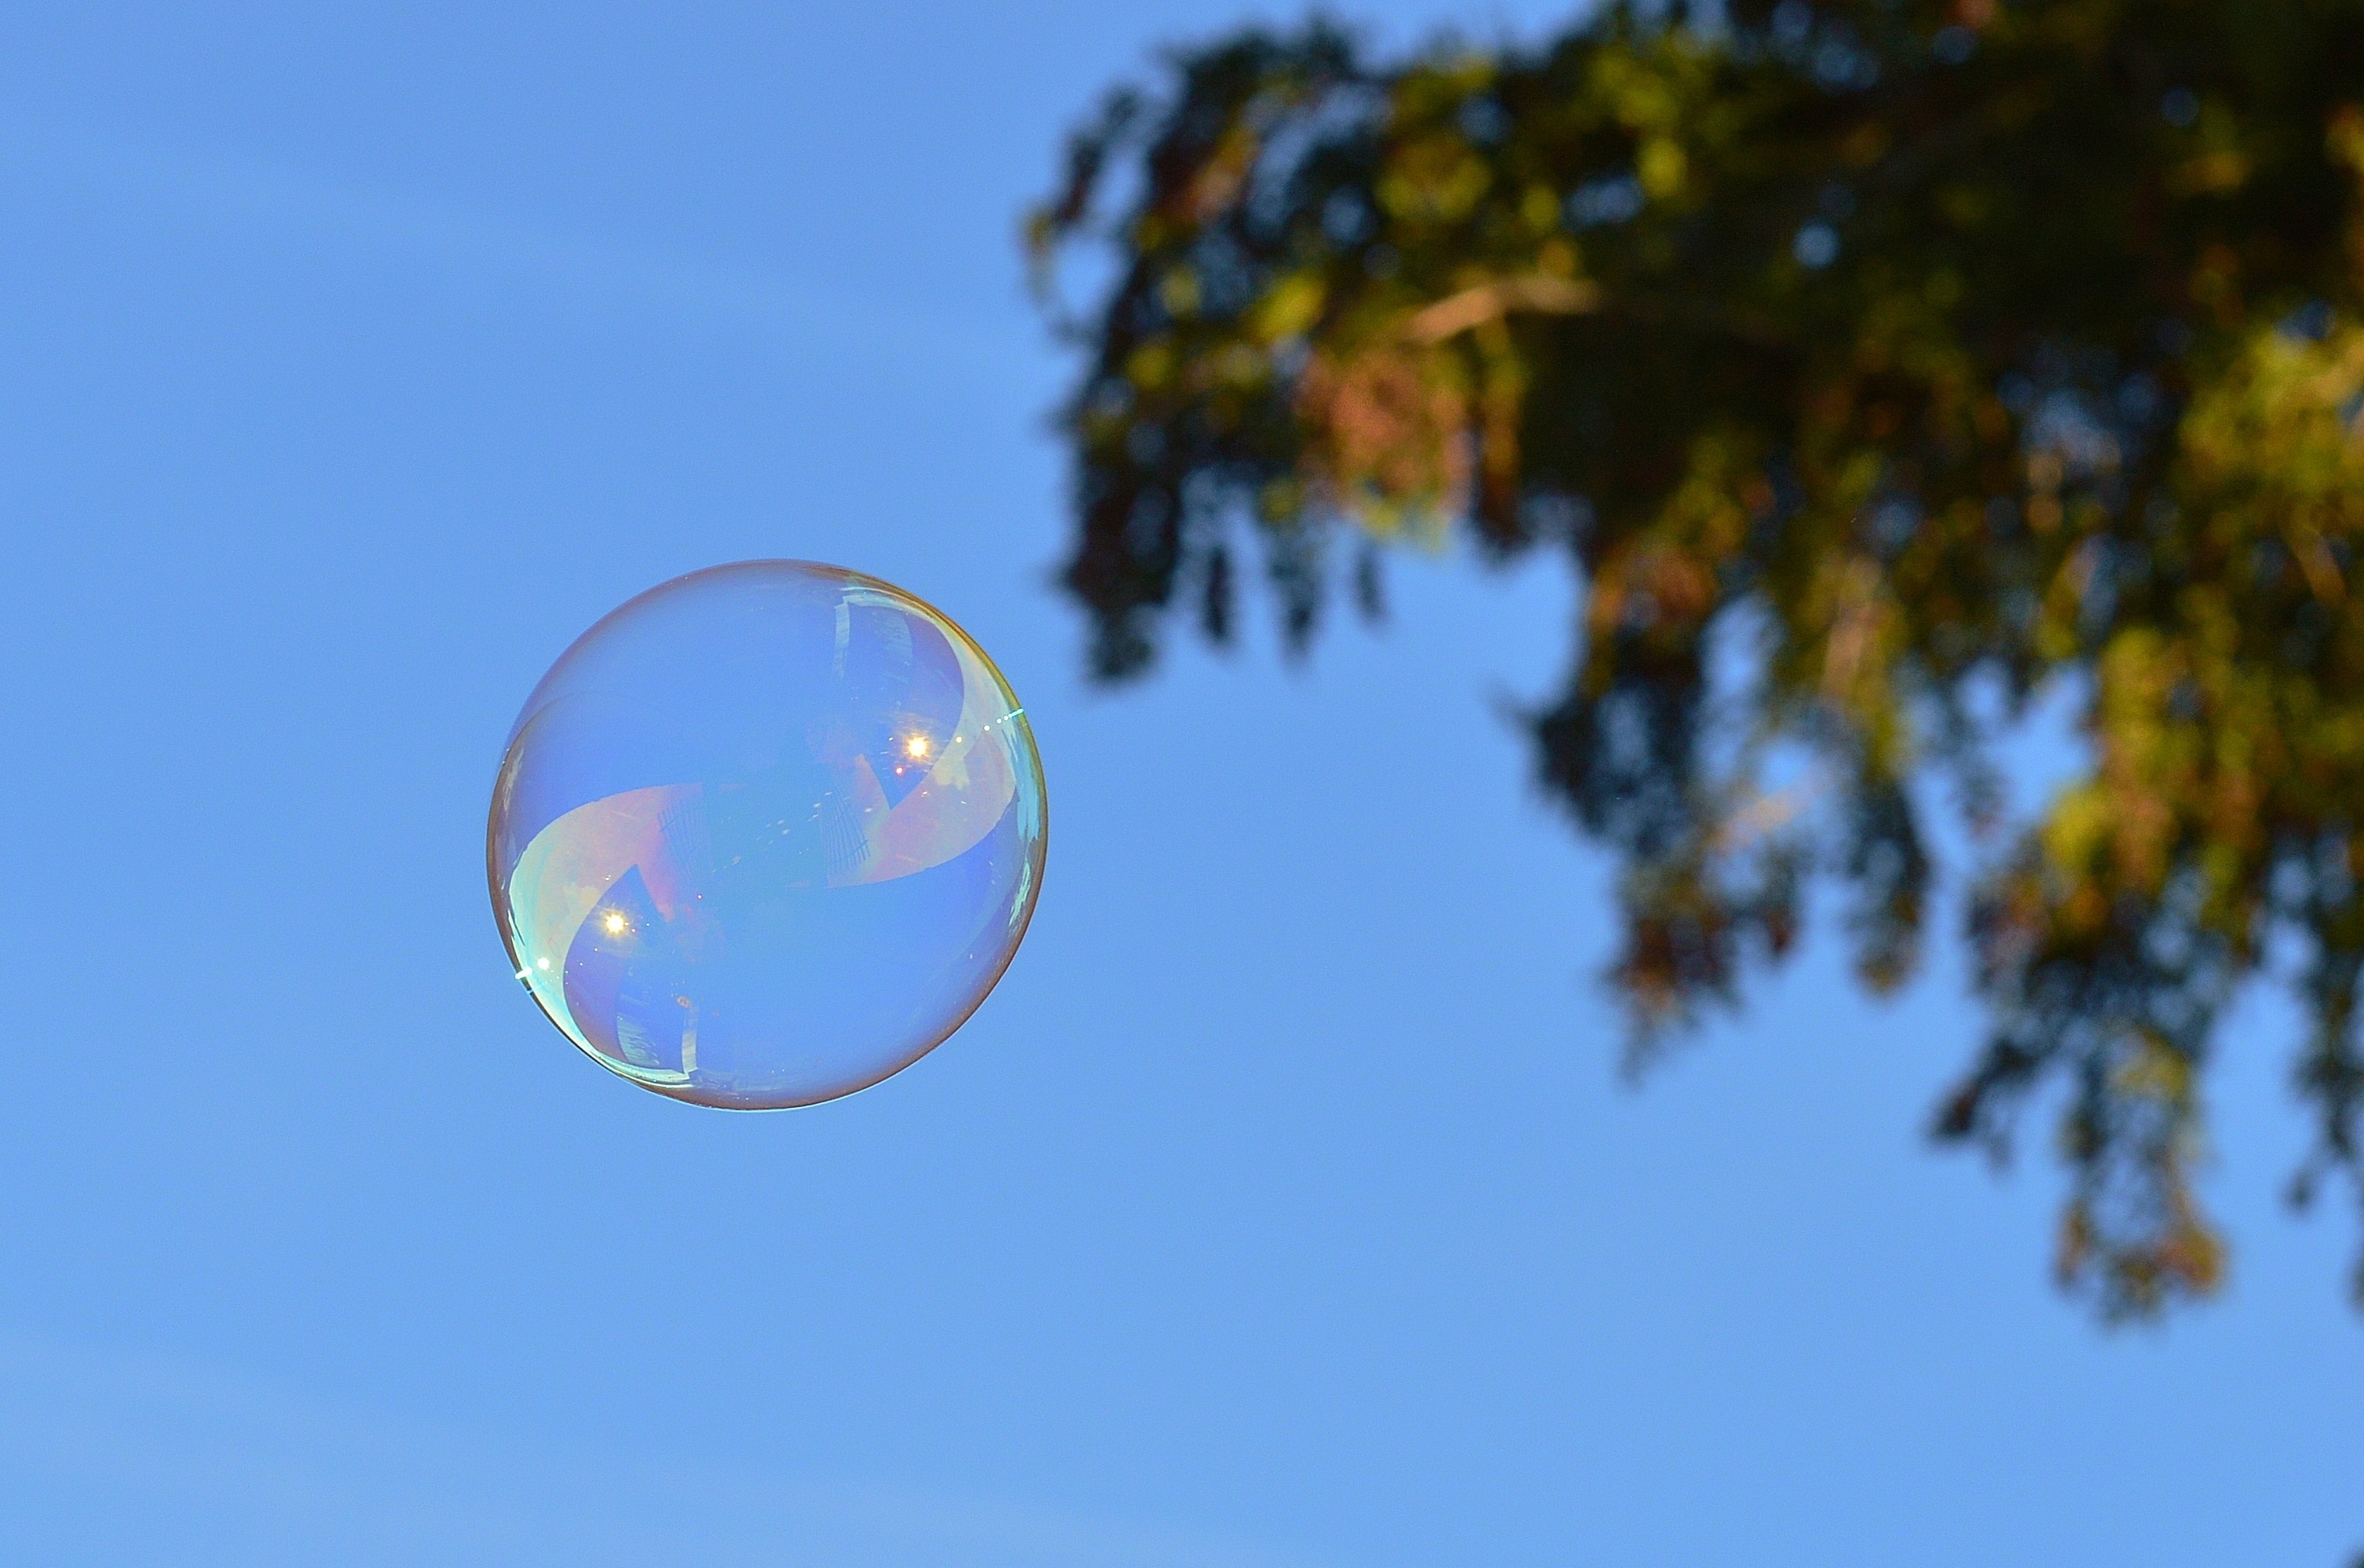 Пузырек представляет собой